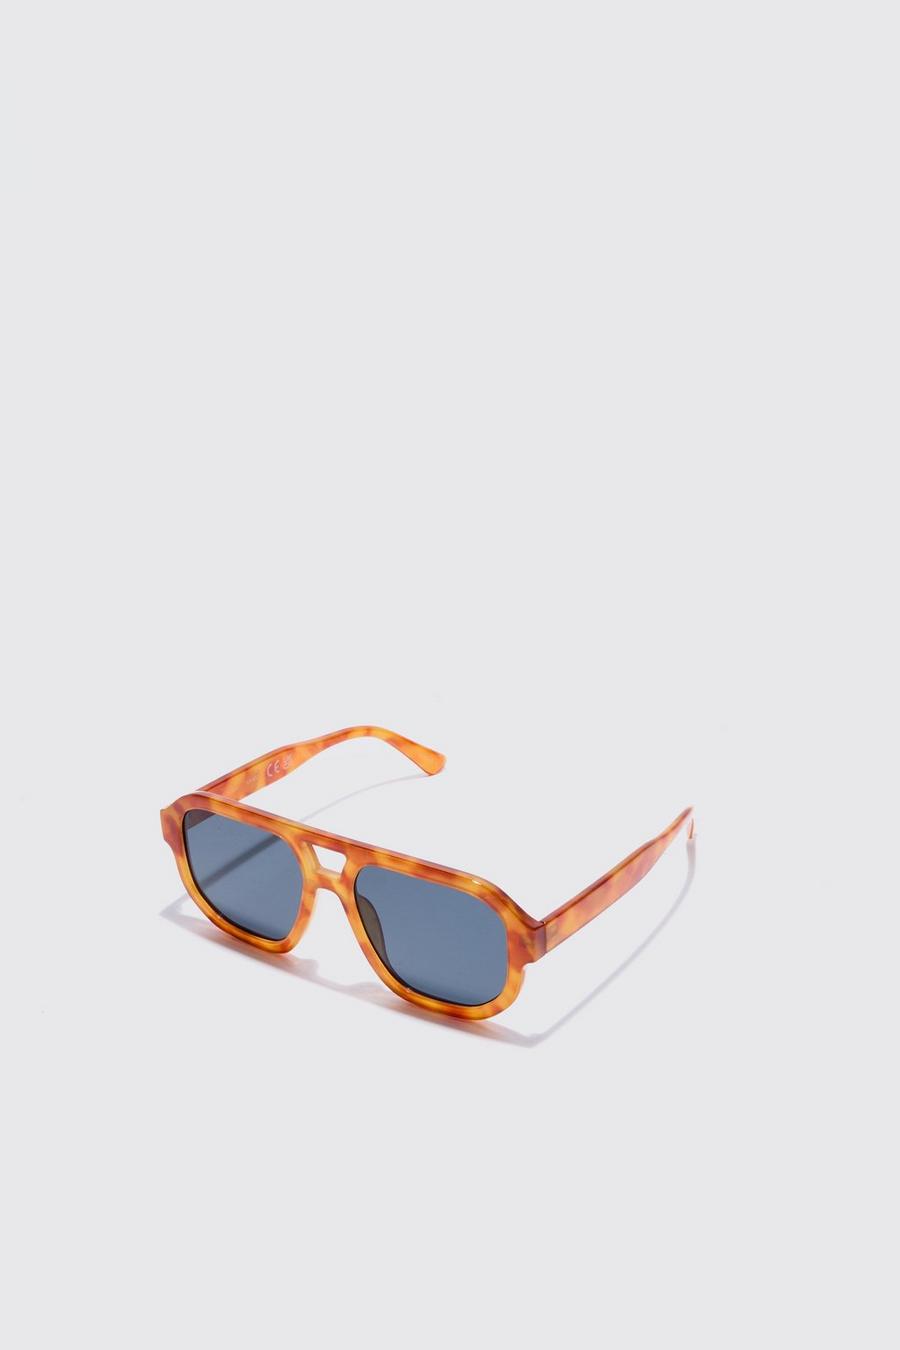 Men Aviator Sunglasses Polarized Women - UV 400 with case 60MM -  Orange(gold Fra…